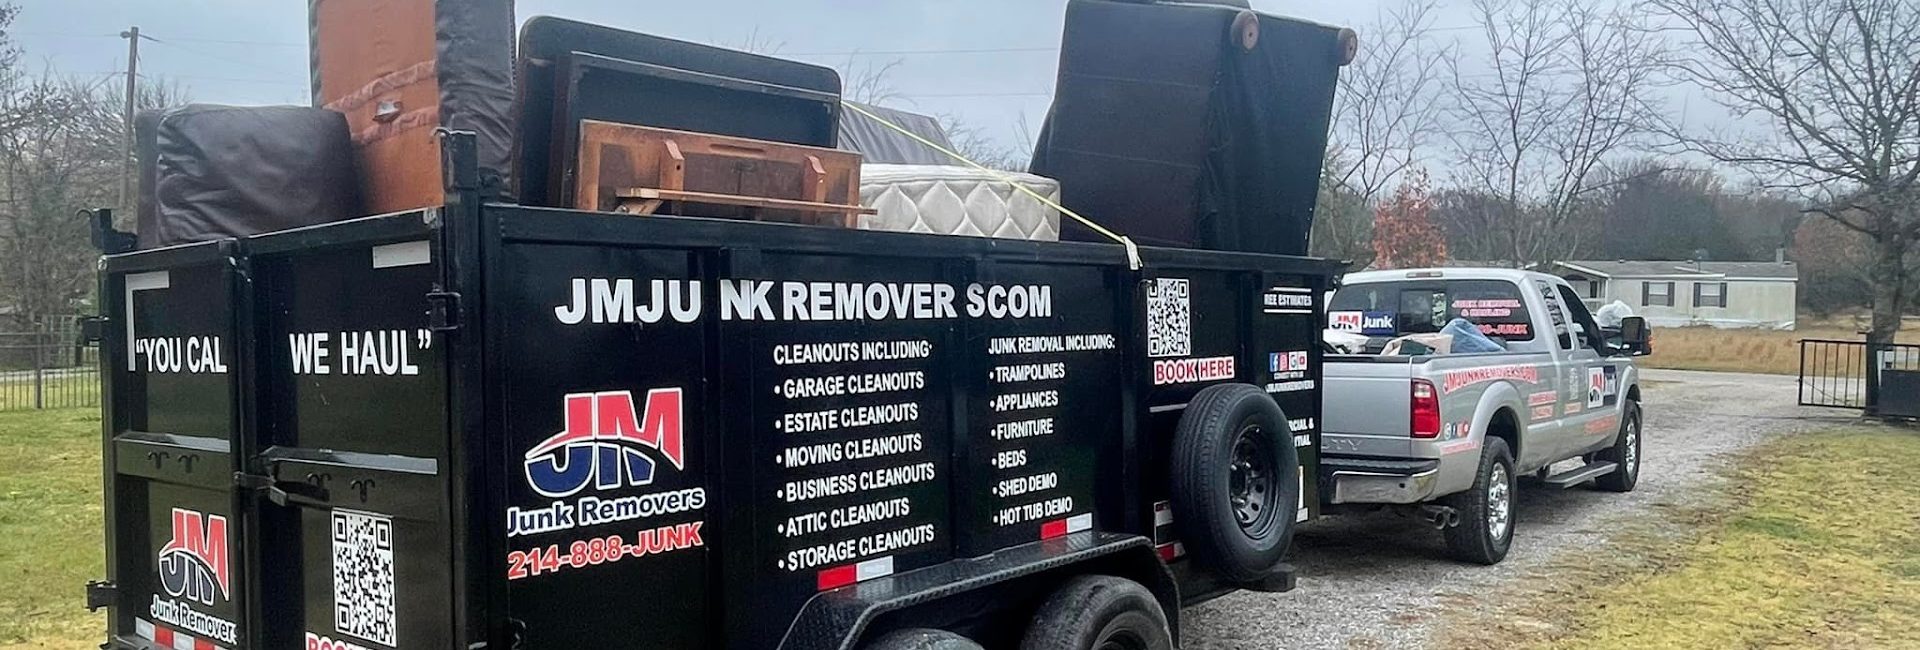 JM Junk Removers 6